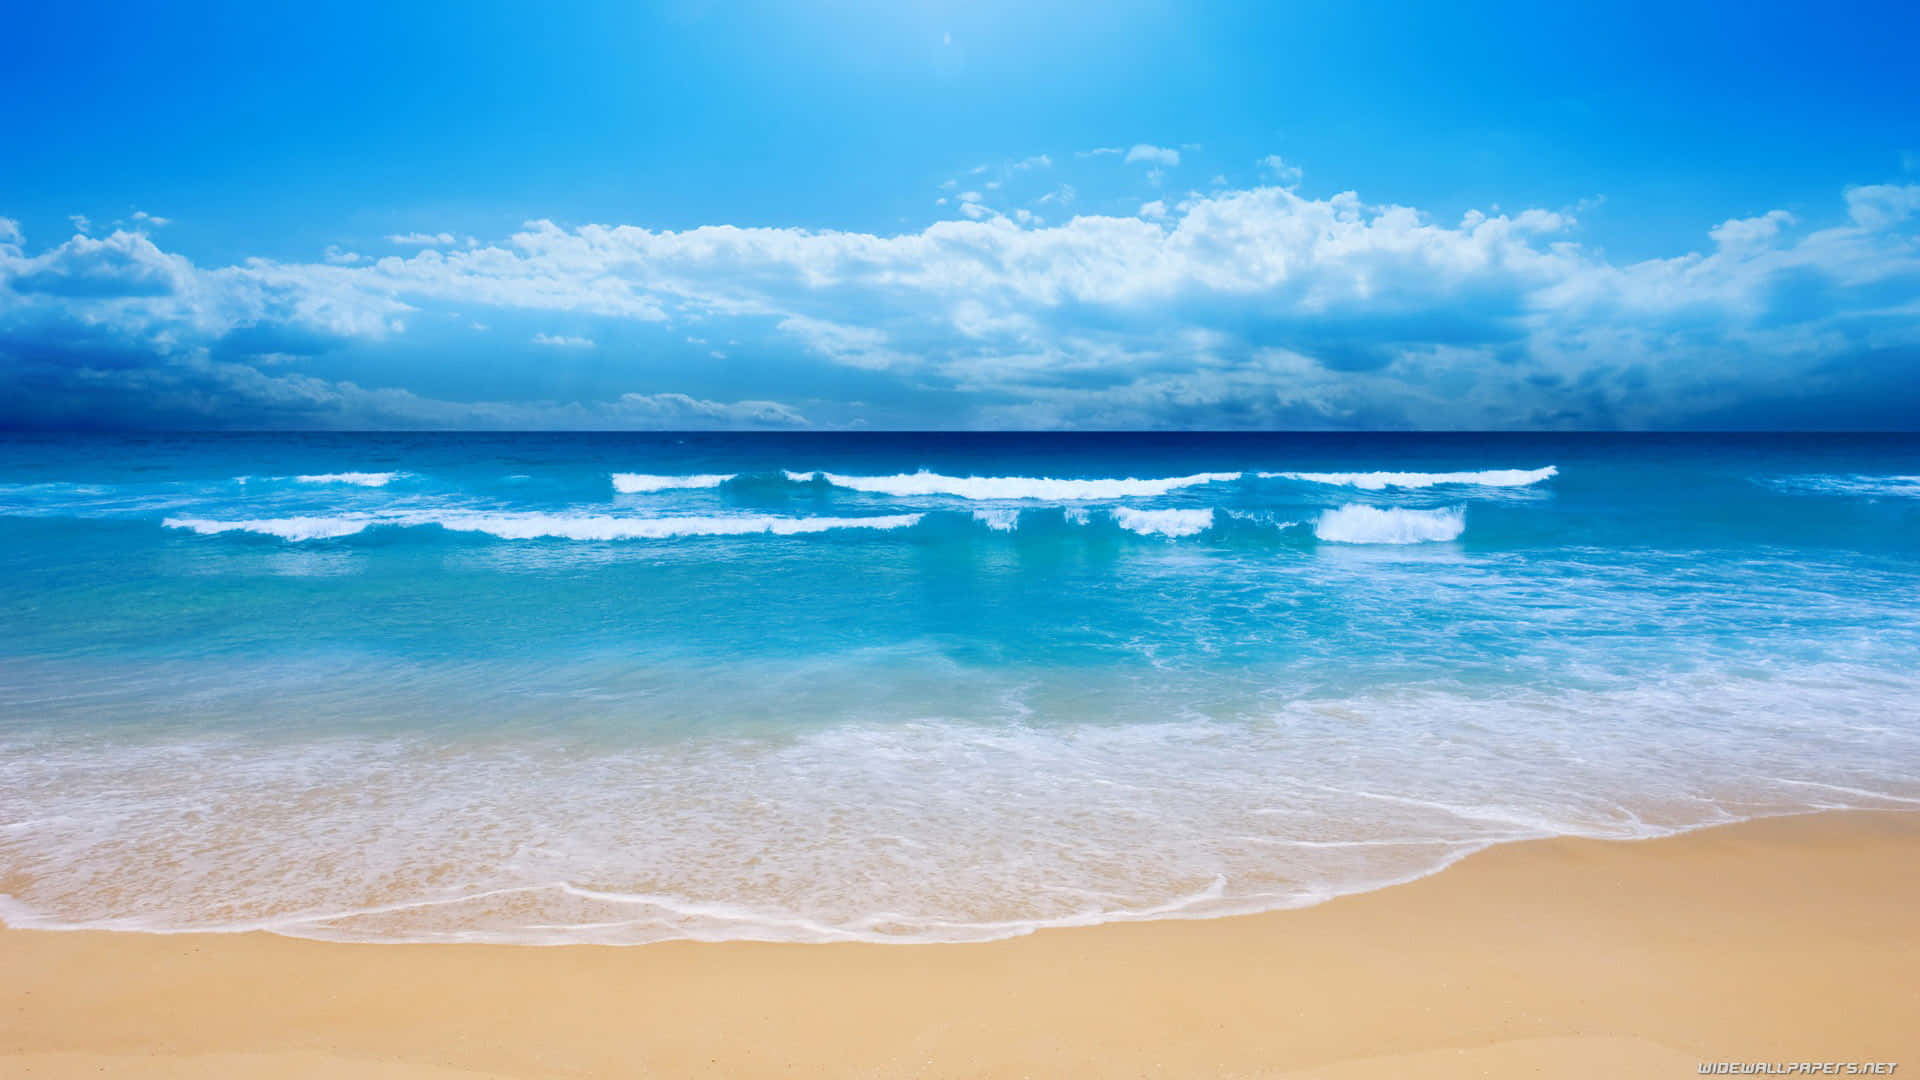 Hình nền biển xanh đẹp sẽ khiến bạn muốn đắm mình trong lòng đại dương. Chiêm ngưỡng những toàn cảnh đẹp như mơ của biển xanh và nàng tiên cá. Hãy làm cho màn hình của bạn trở nên sống động hơn với hình nền biển xanh đẹp này.